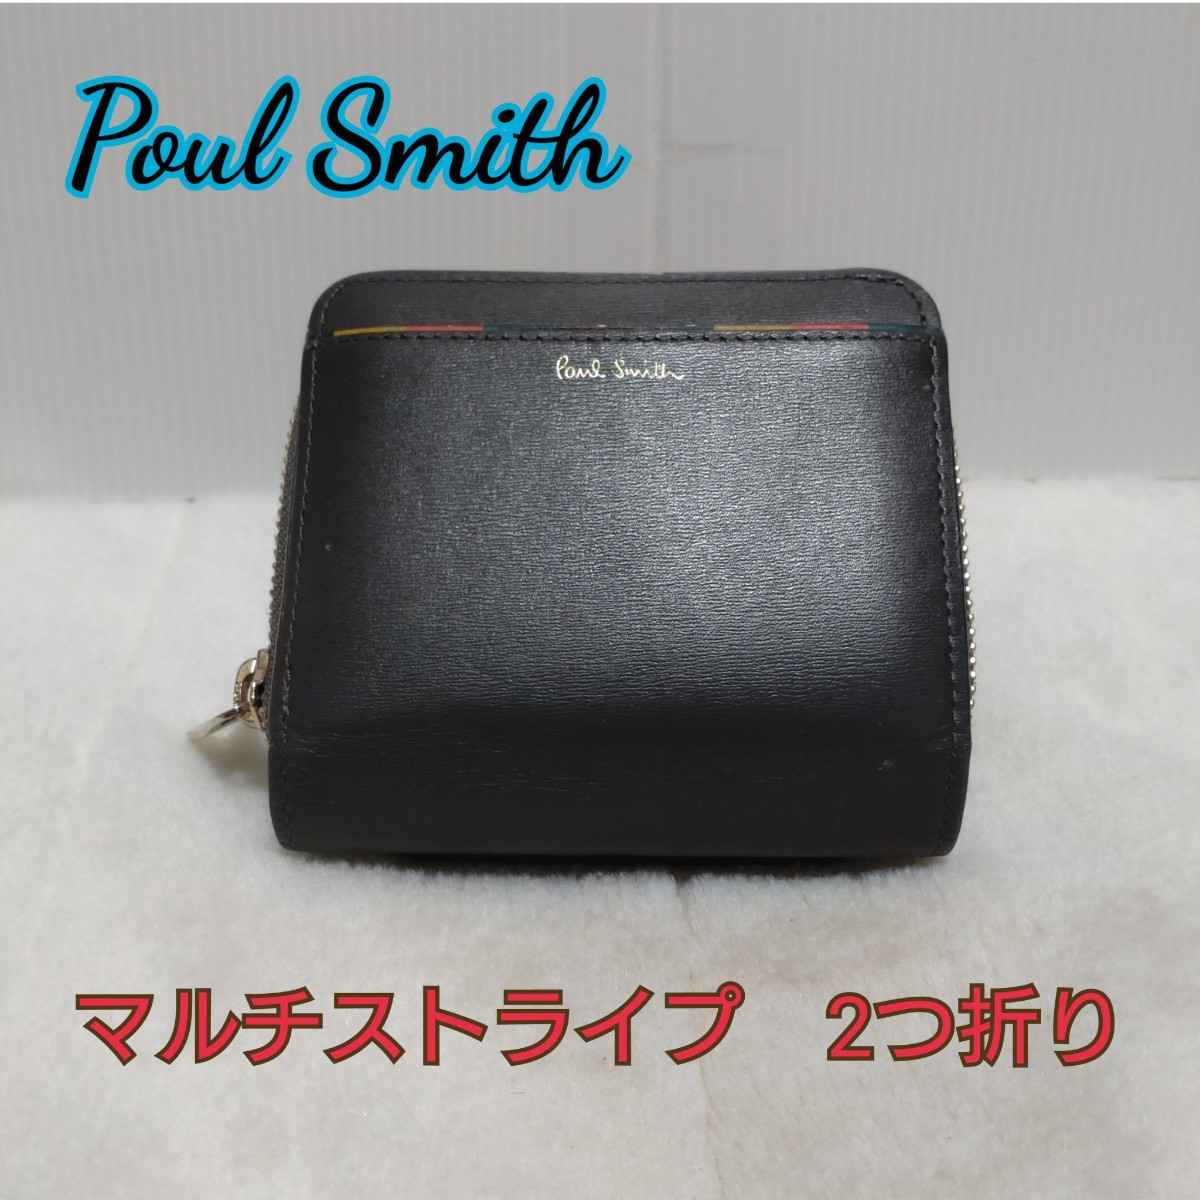 人気の贈り物が ポールスミス Poul Smith☆2つ折り財布☆マルチ